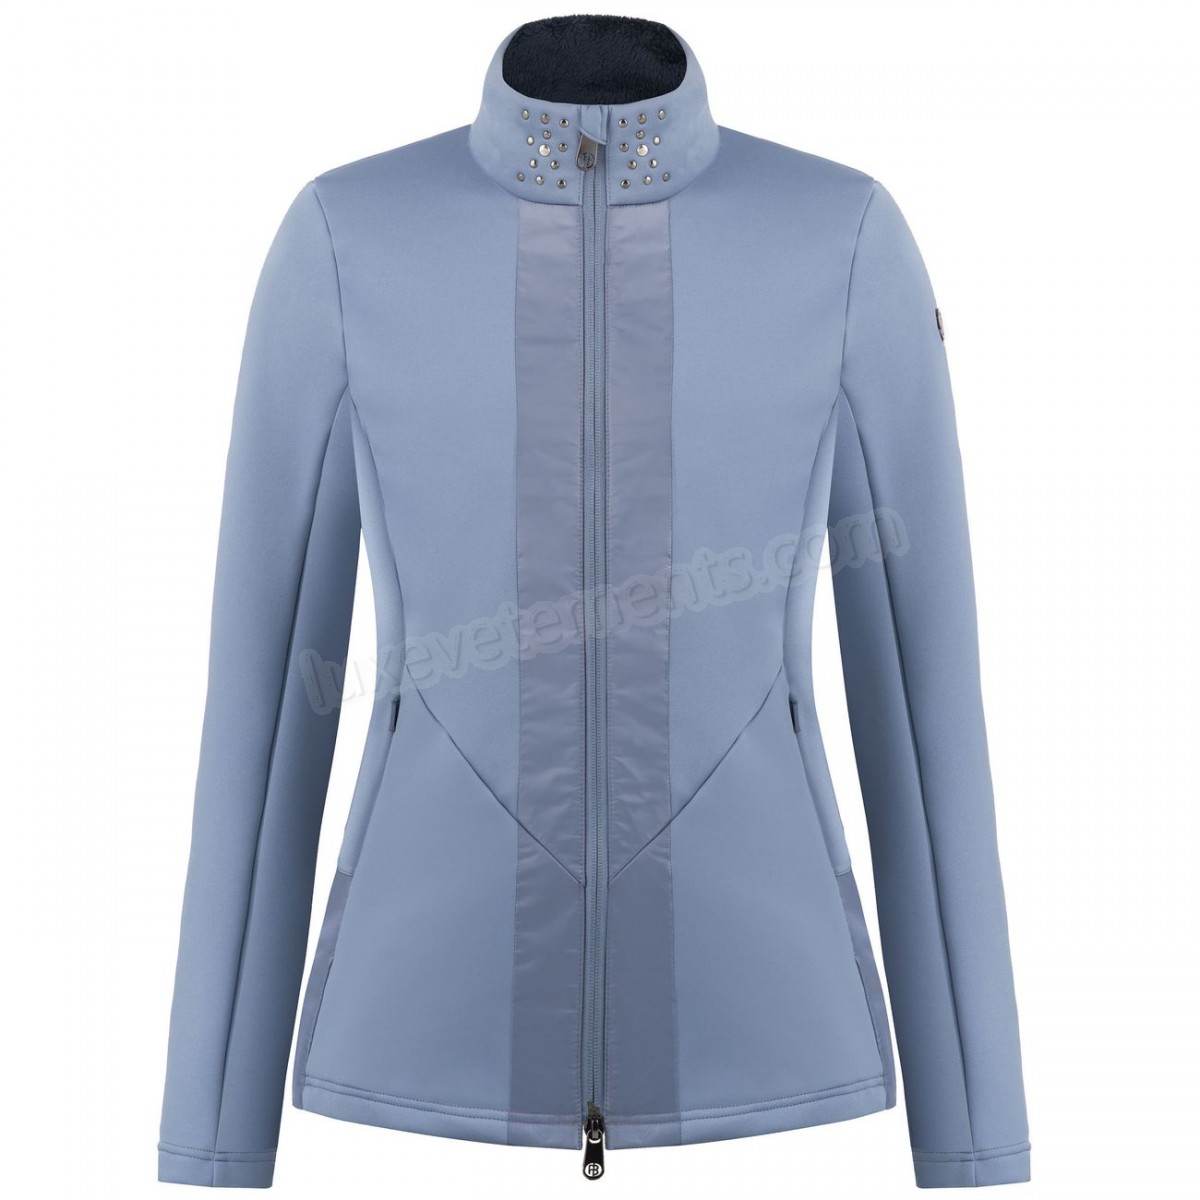 Poivre Blanc-Sports d'hiver femme POIVRE BLANC Veste En Polaire Poivre Blanc Hybrid Stretch Fleece Jacket 1702 Shadow Blue Femme Vente en ligne - -0